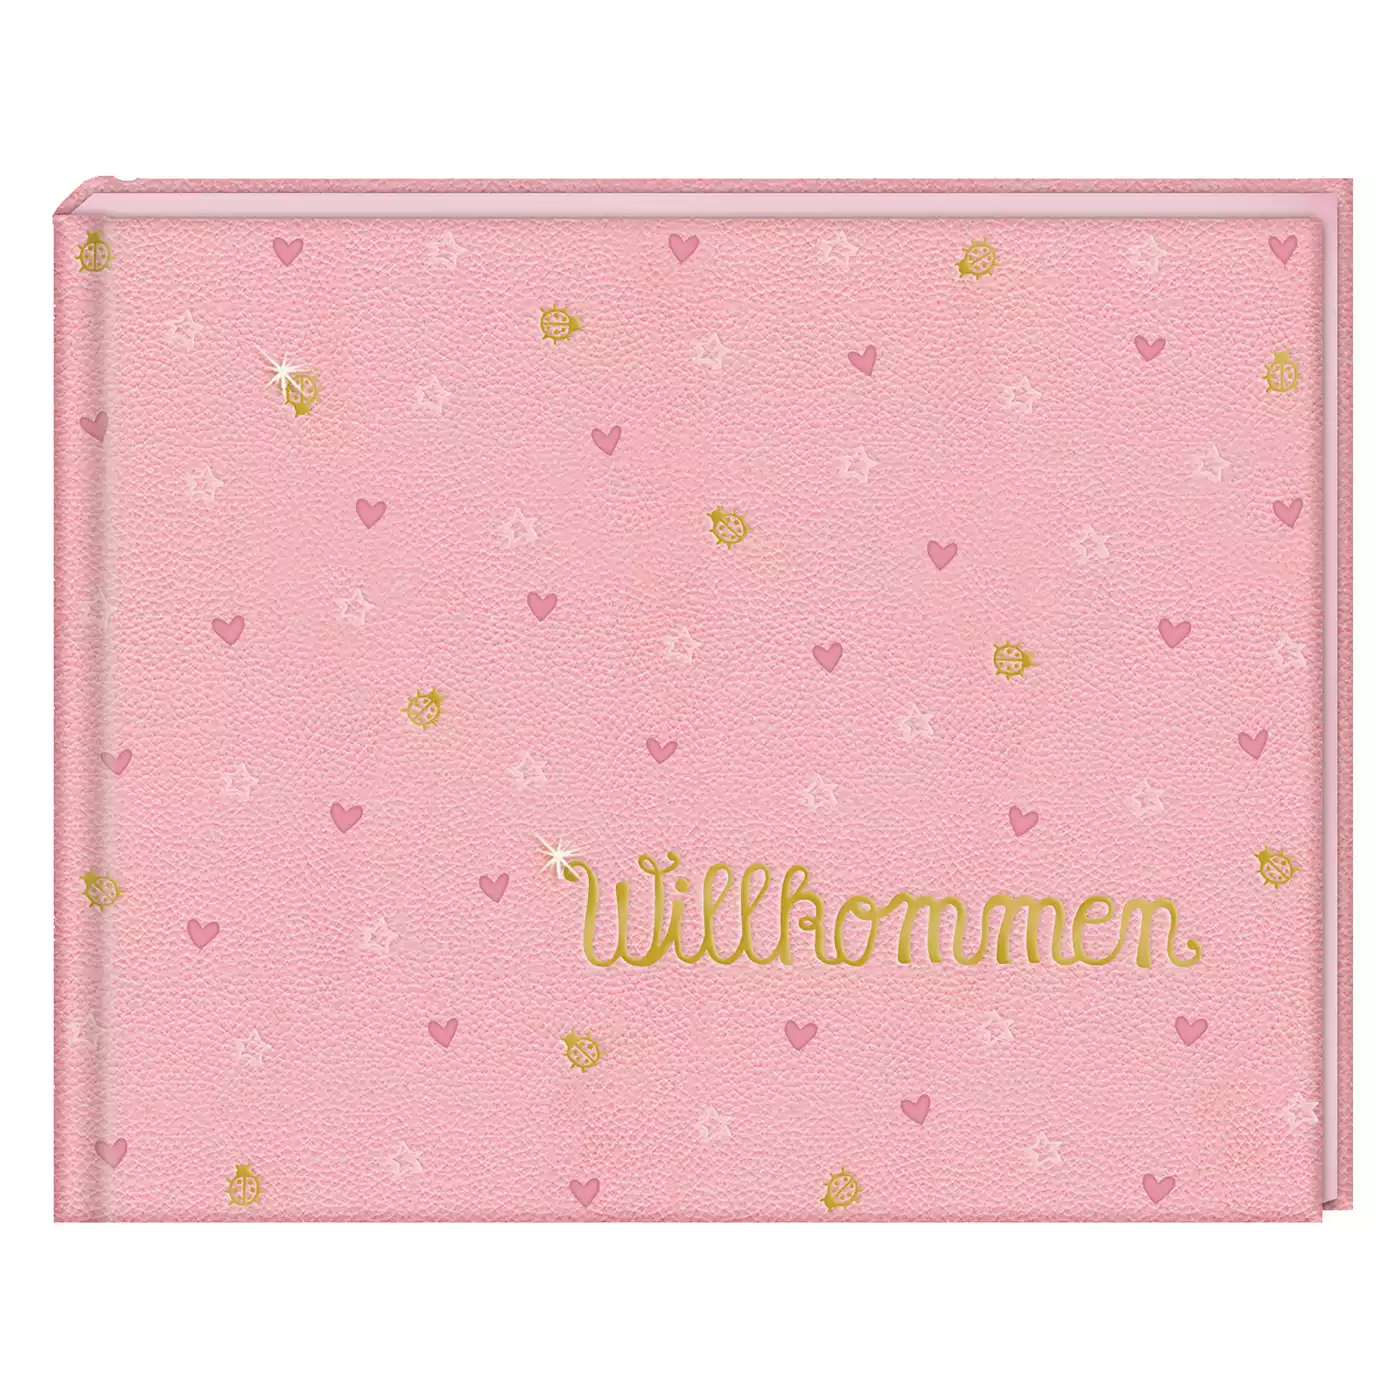 Babyalbum Willkommen BabyGlück DIE SPIEGELBURG Pink Rosa 2000576399902 1